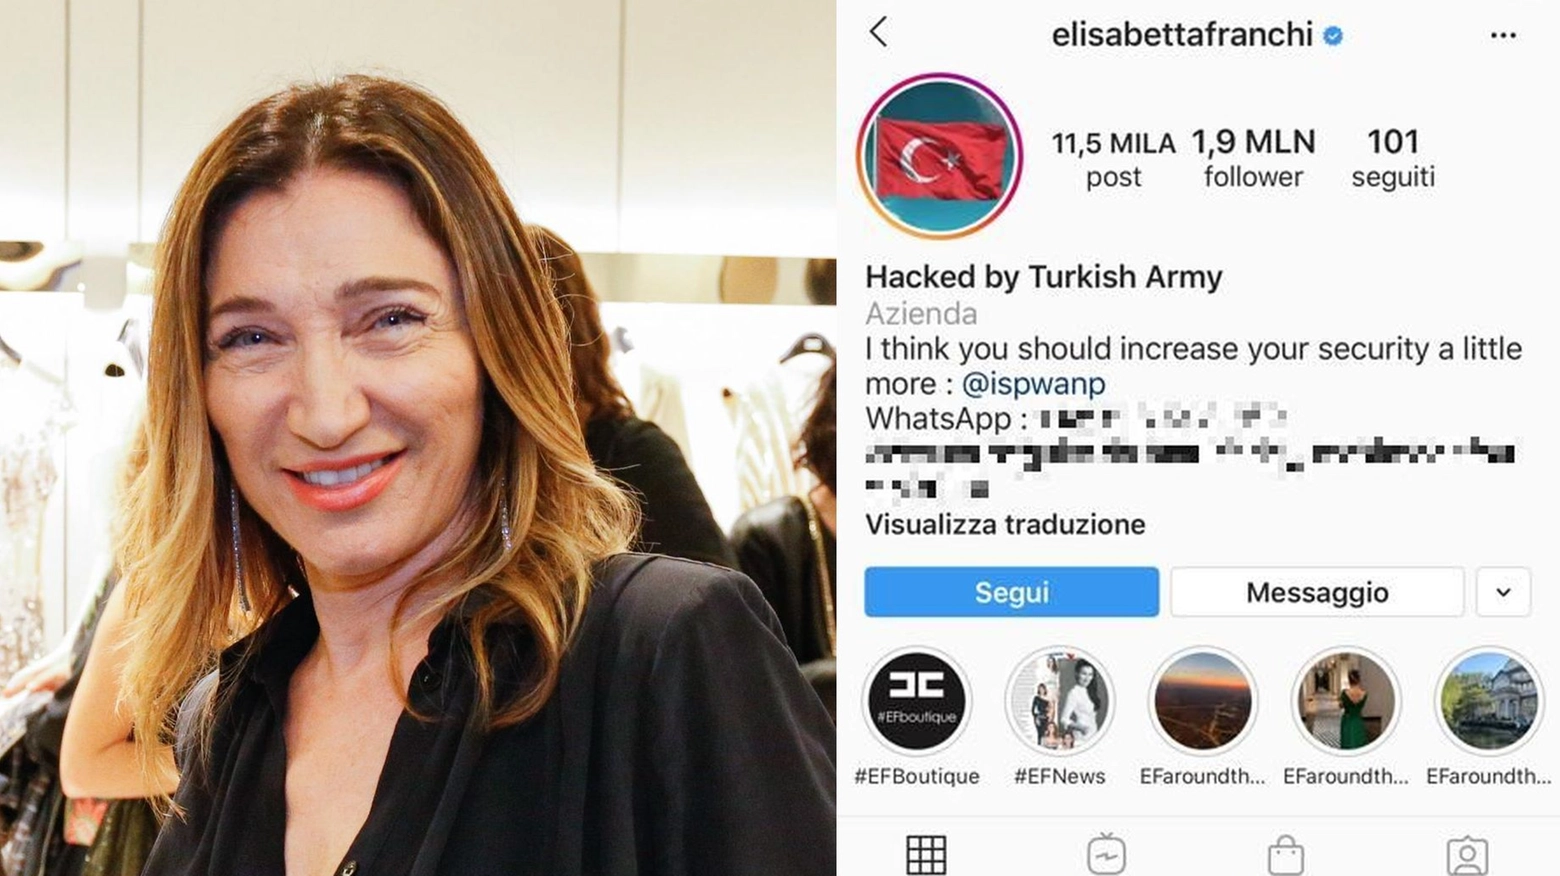 La stilista Elisabetta Franchi e il suo profilo instagram hackerato